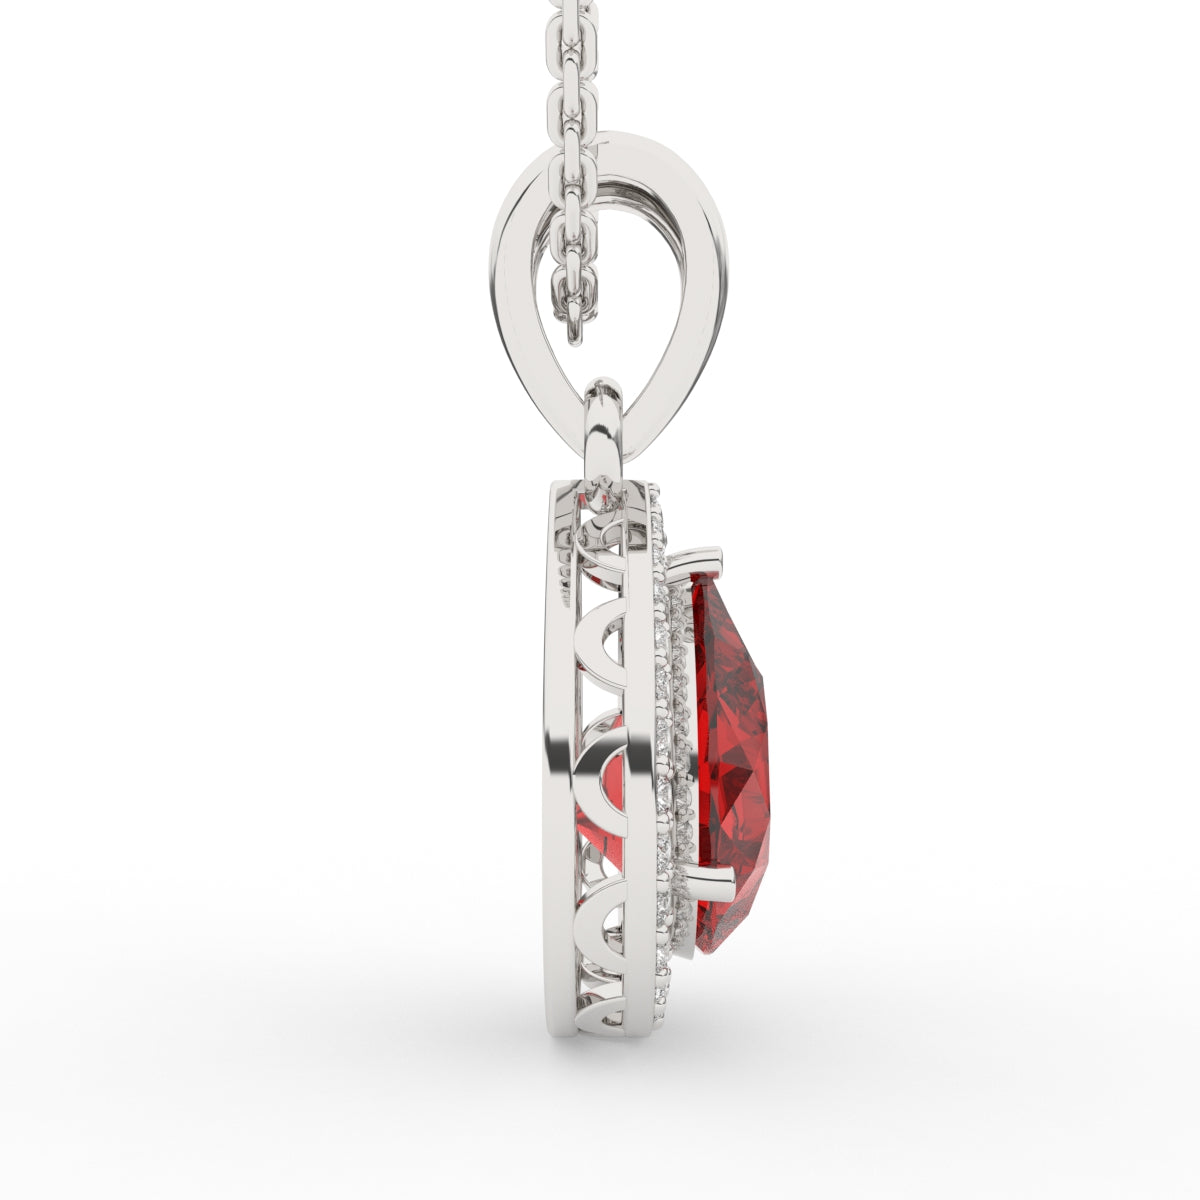 Luxurious Ruby Diamond Pendant